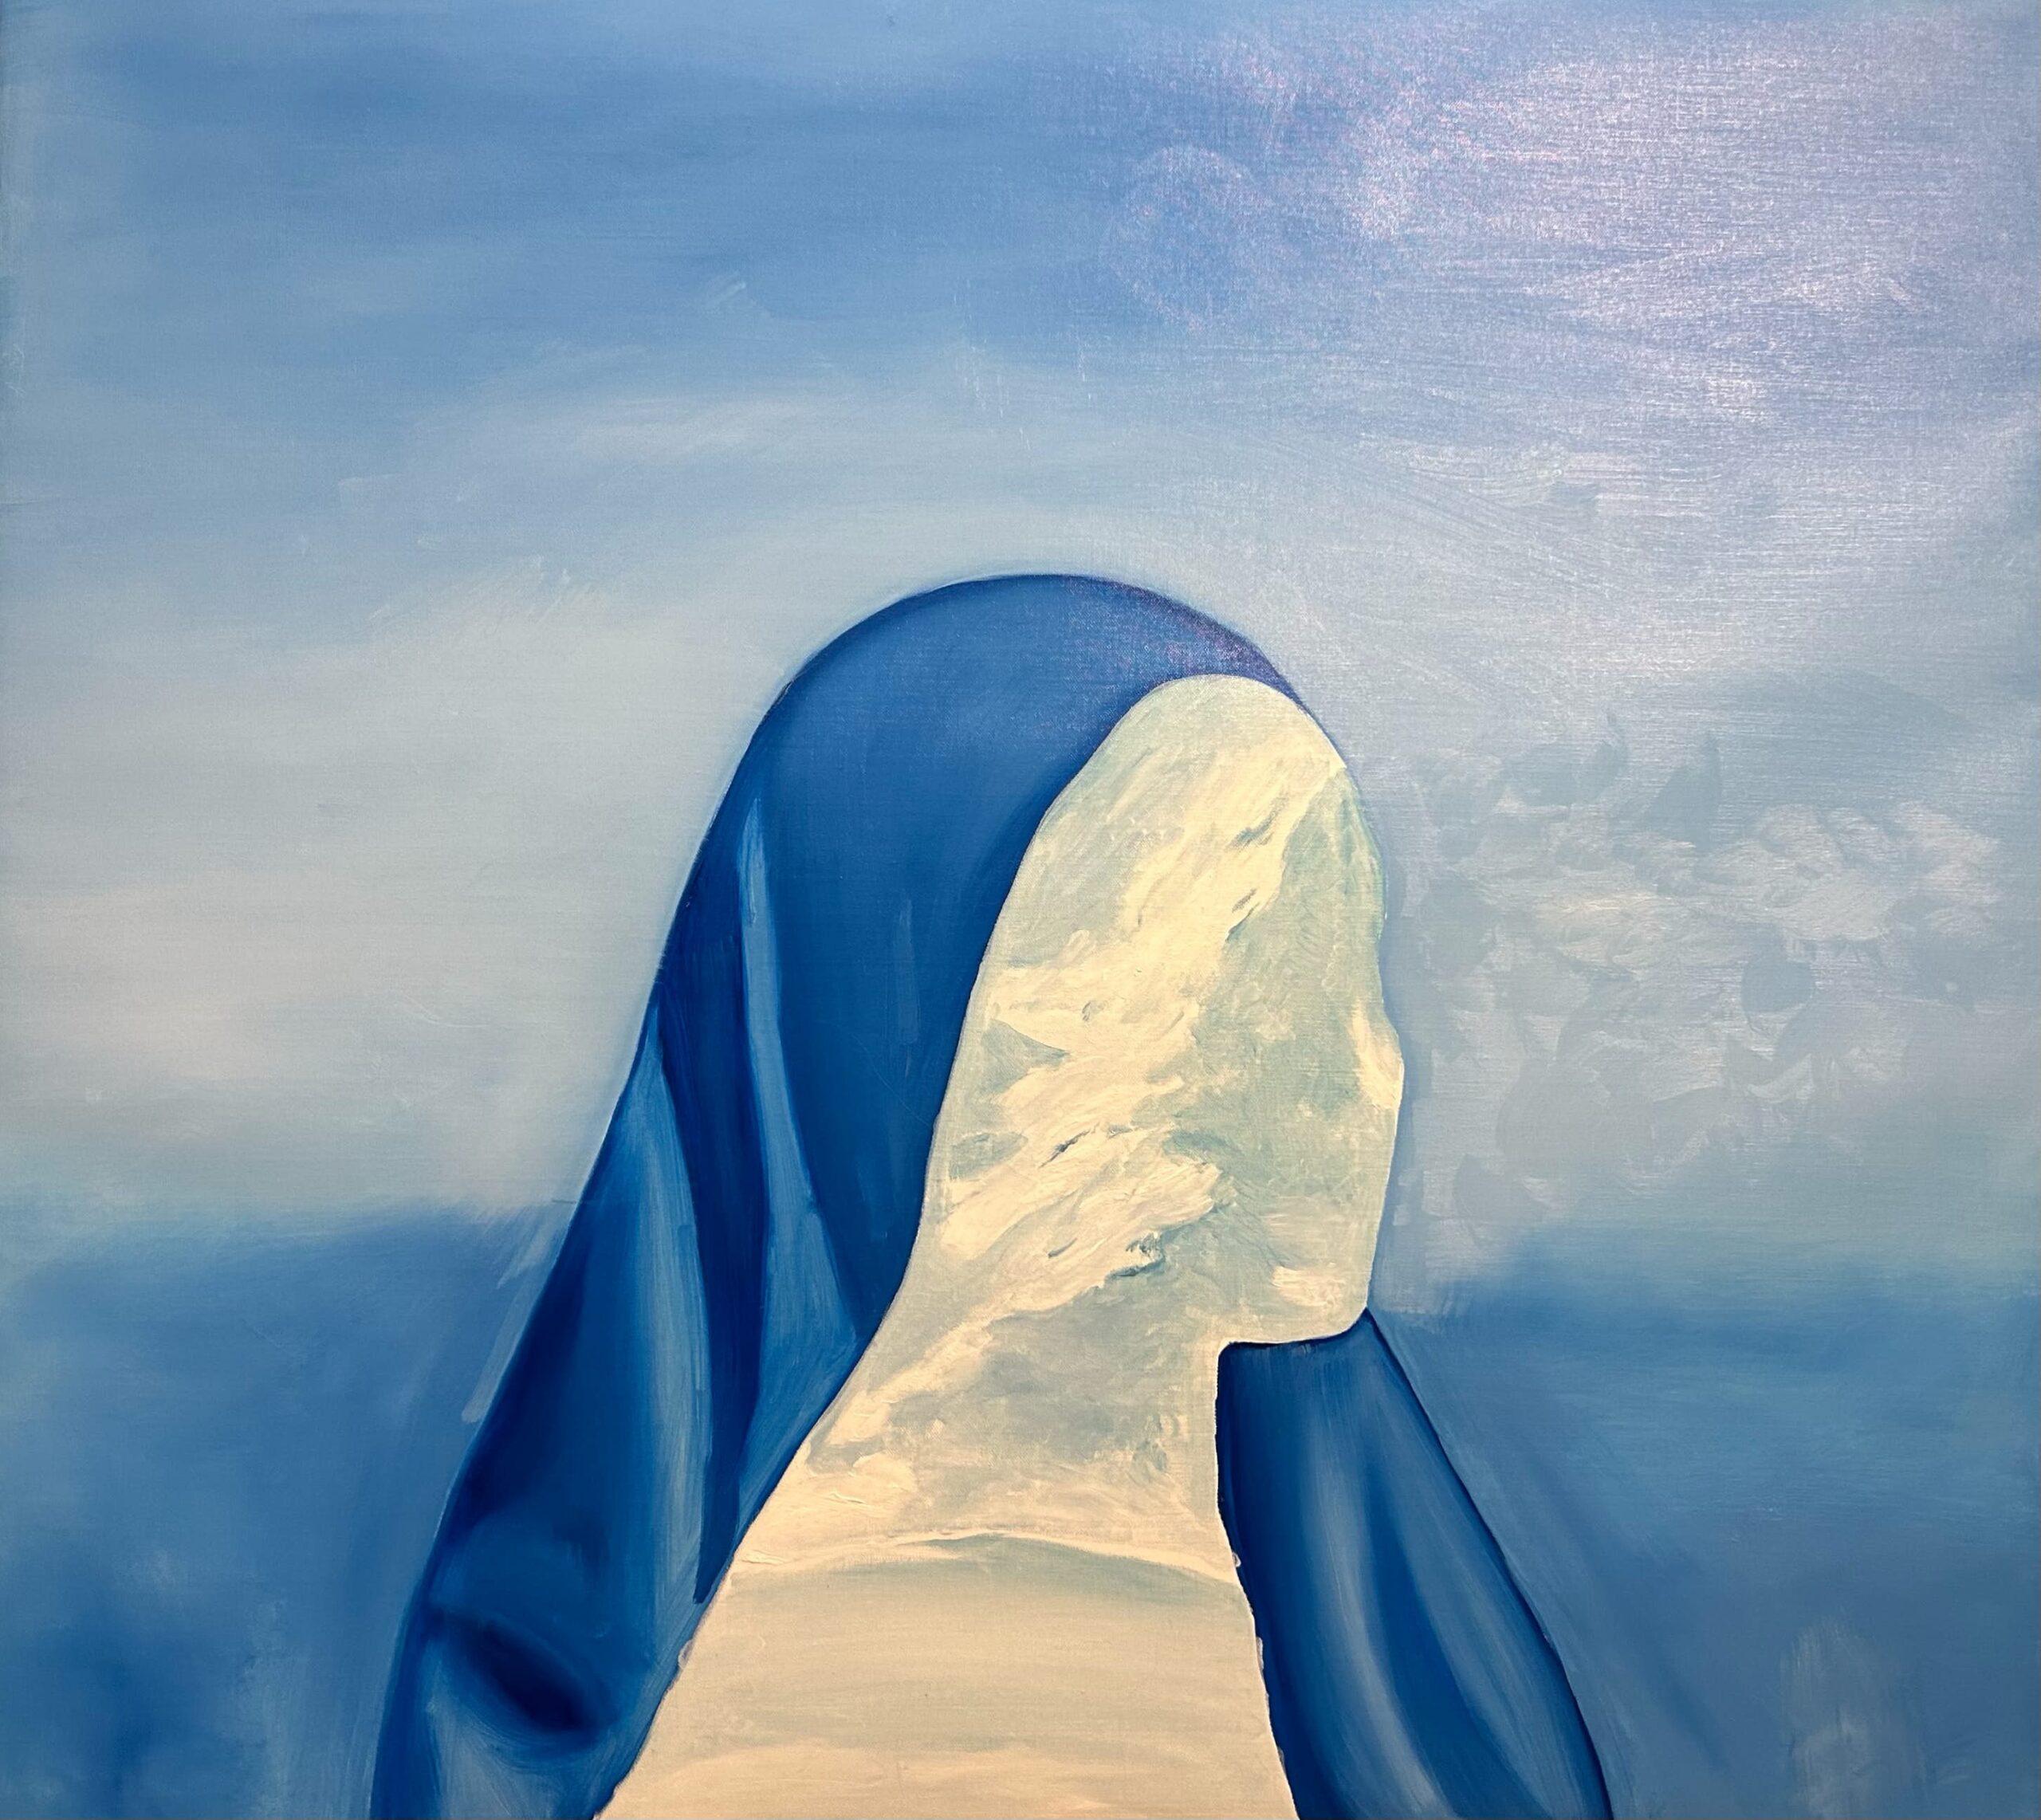 Göttin des blauen Horizonts: Ein himmelwärts gerichtetes Porträt von Karolina Rodak – Painting von Unknown